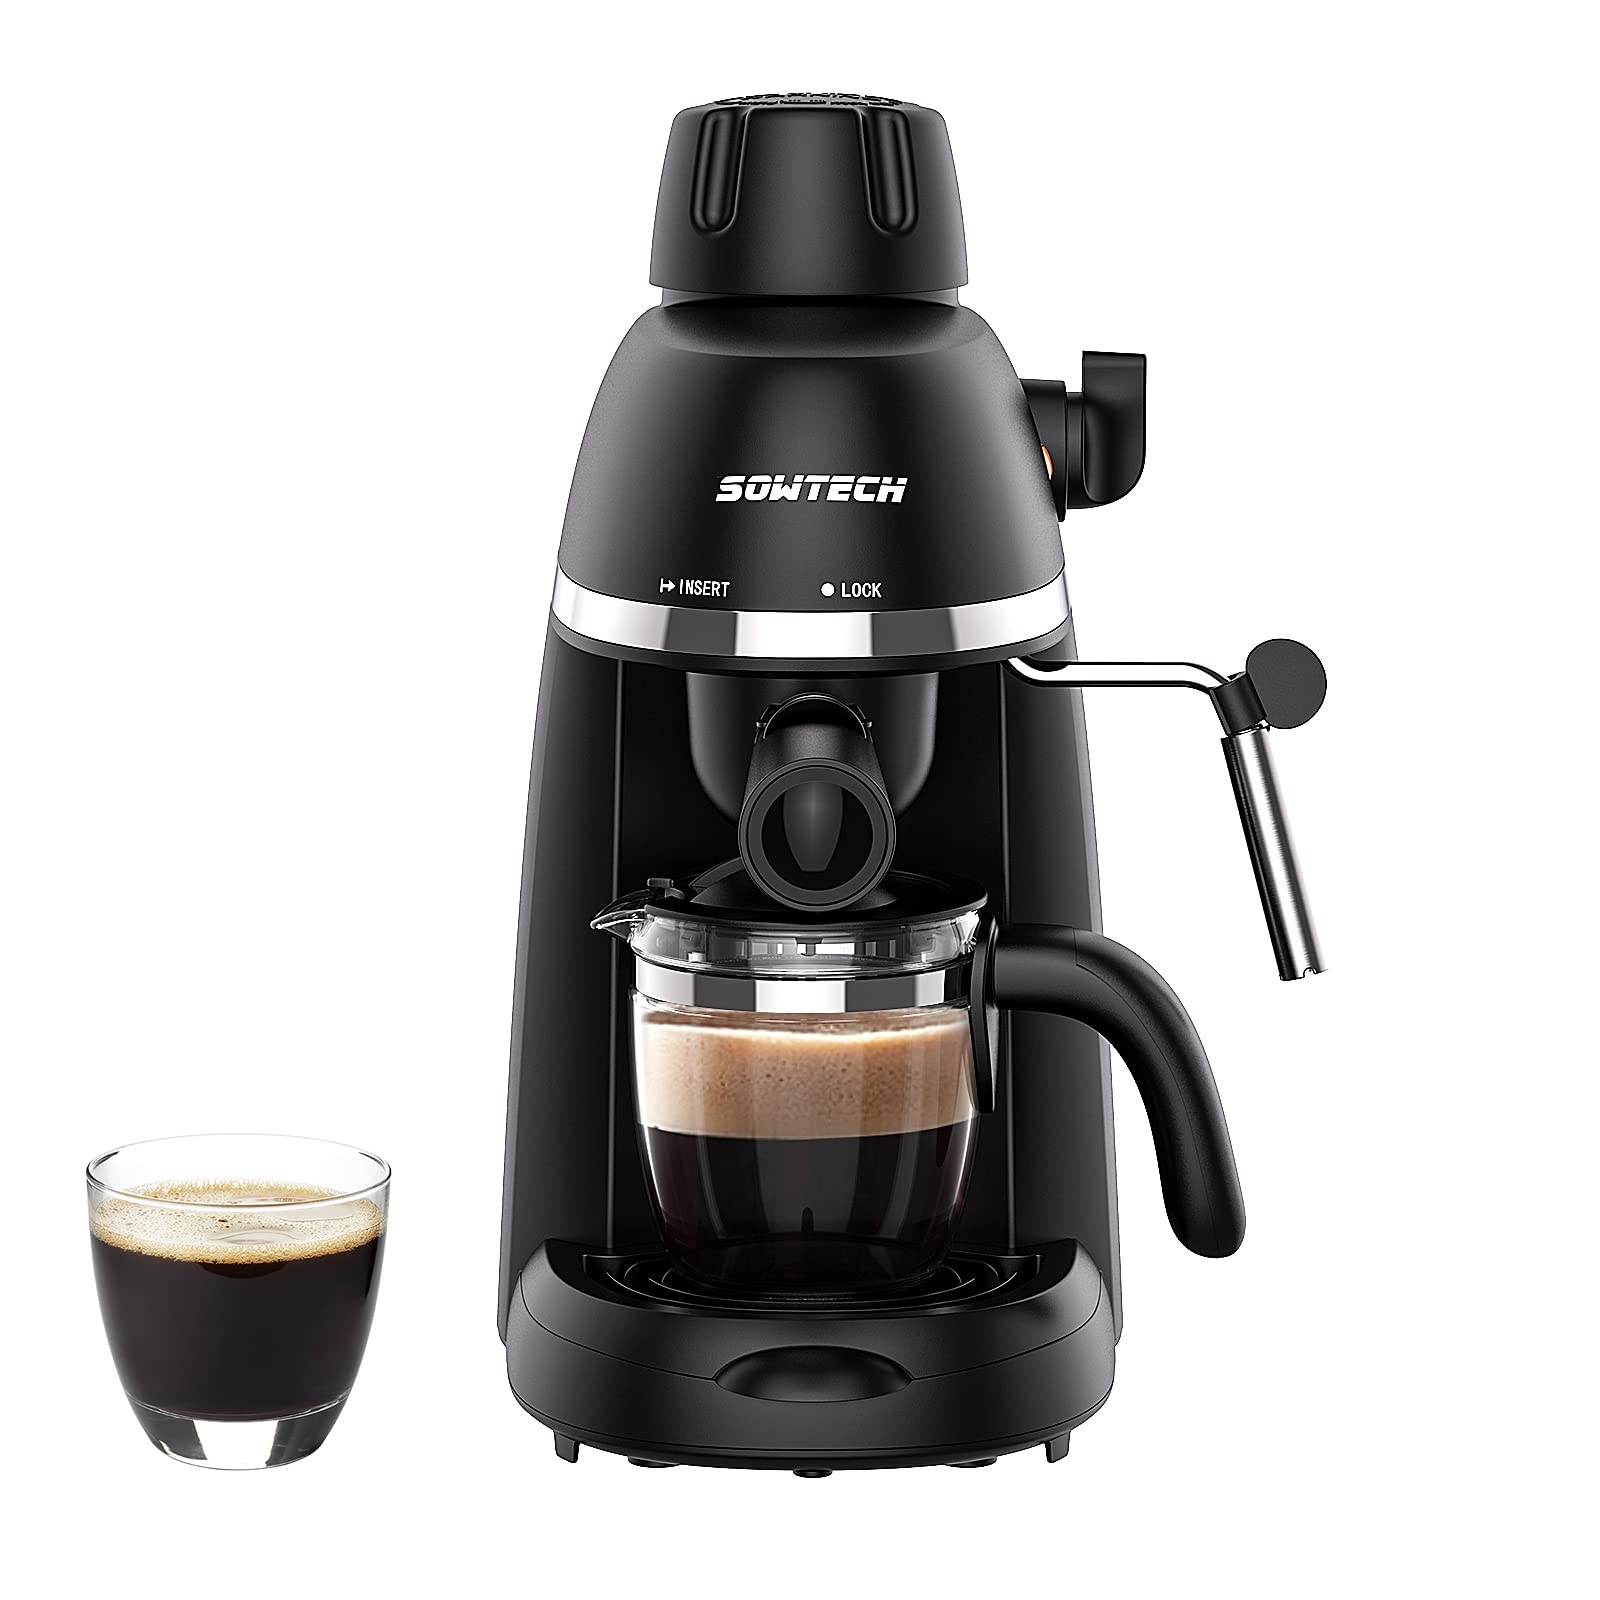 SOWTECH Espresso Coffee Machine Cappuccino Latte Maker